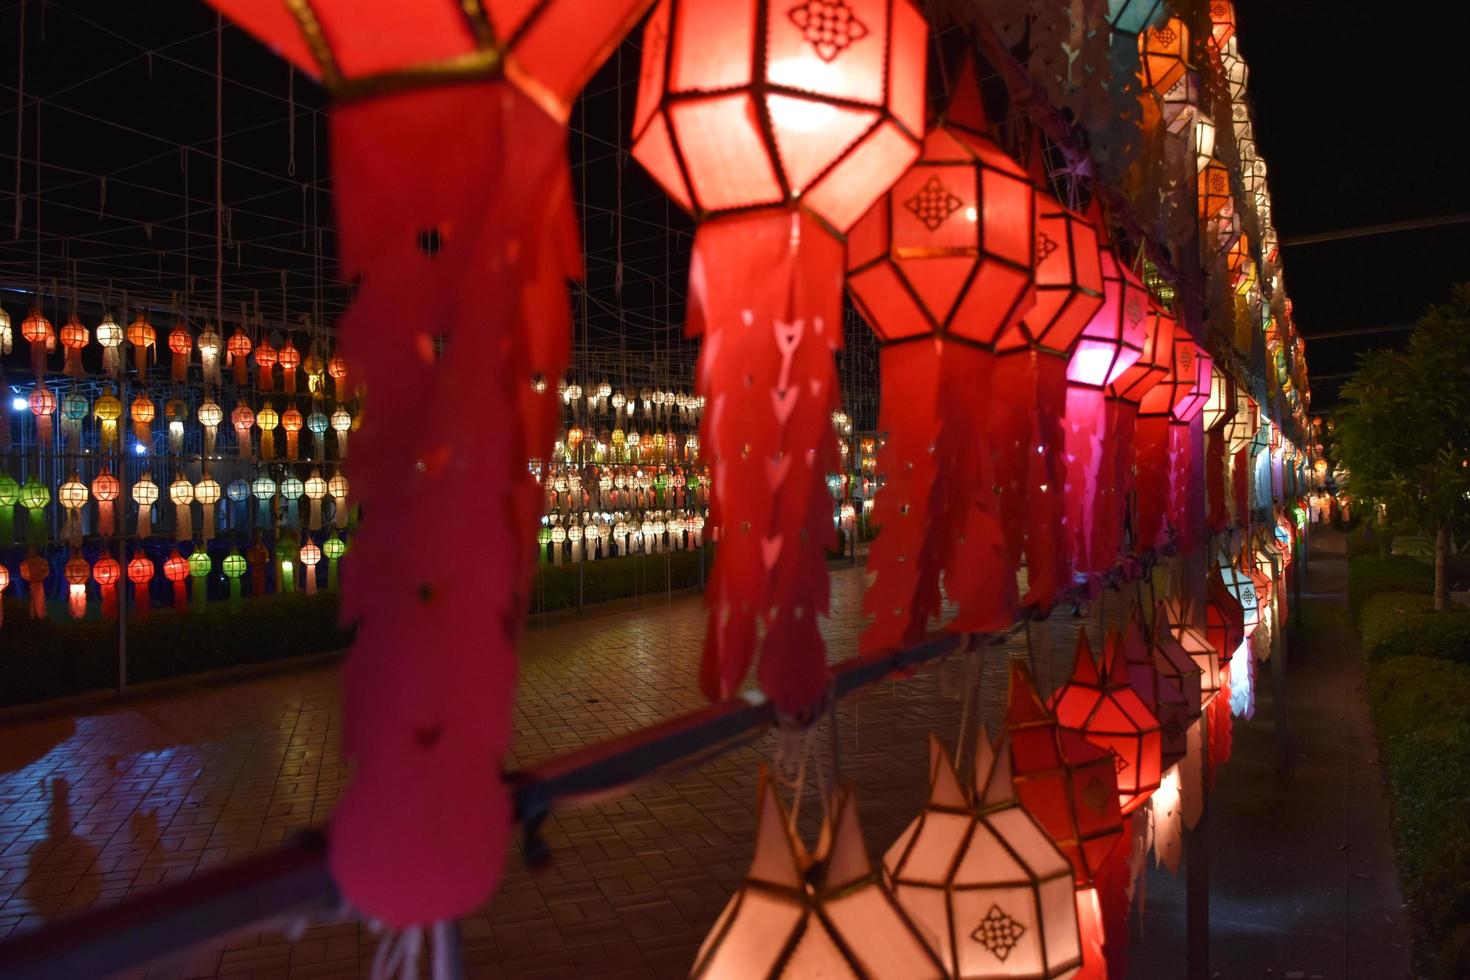 prachtig gevormde en kleurrijke papieren lantaarns worden opgehangen voor een pagode om Lord Buddha te aanbidden in een tempel in het noorden van Thailand. foto